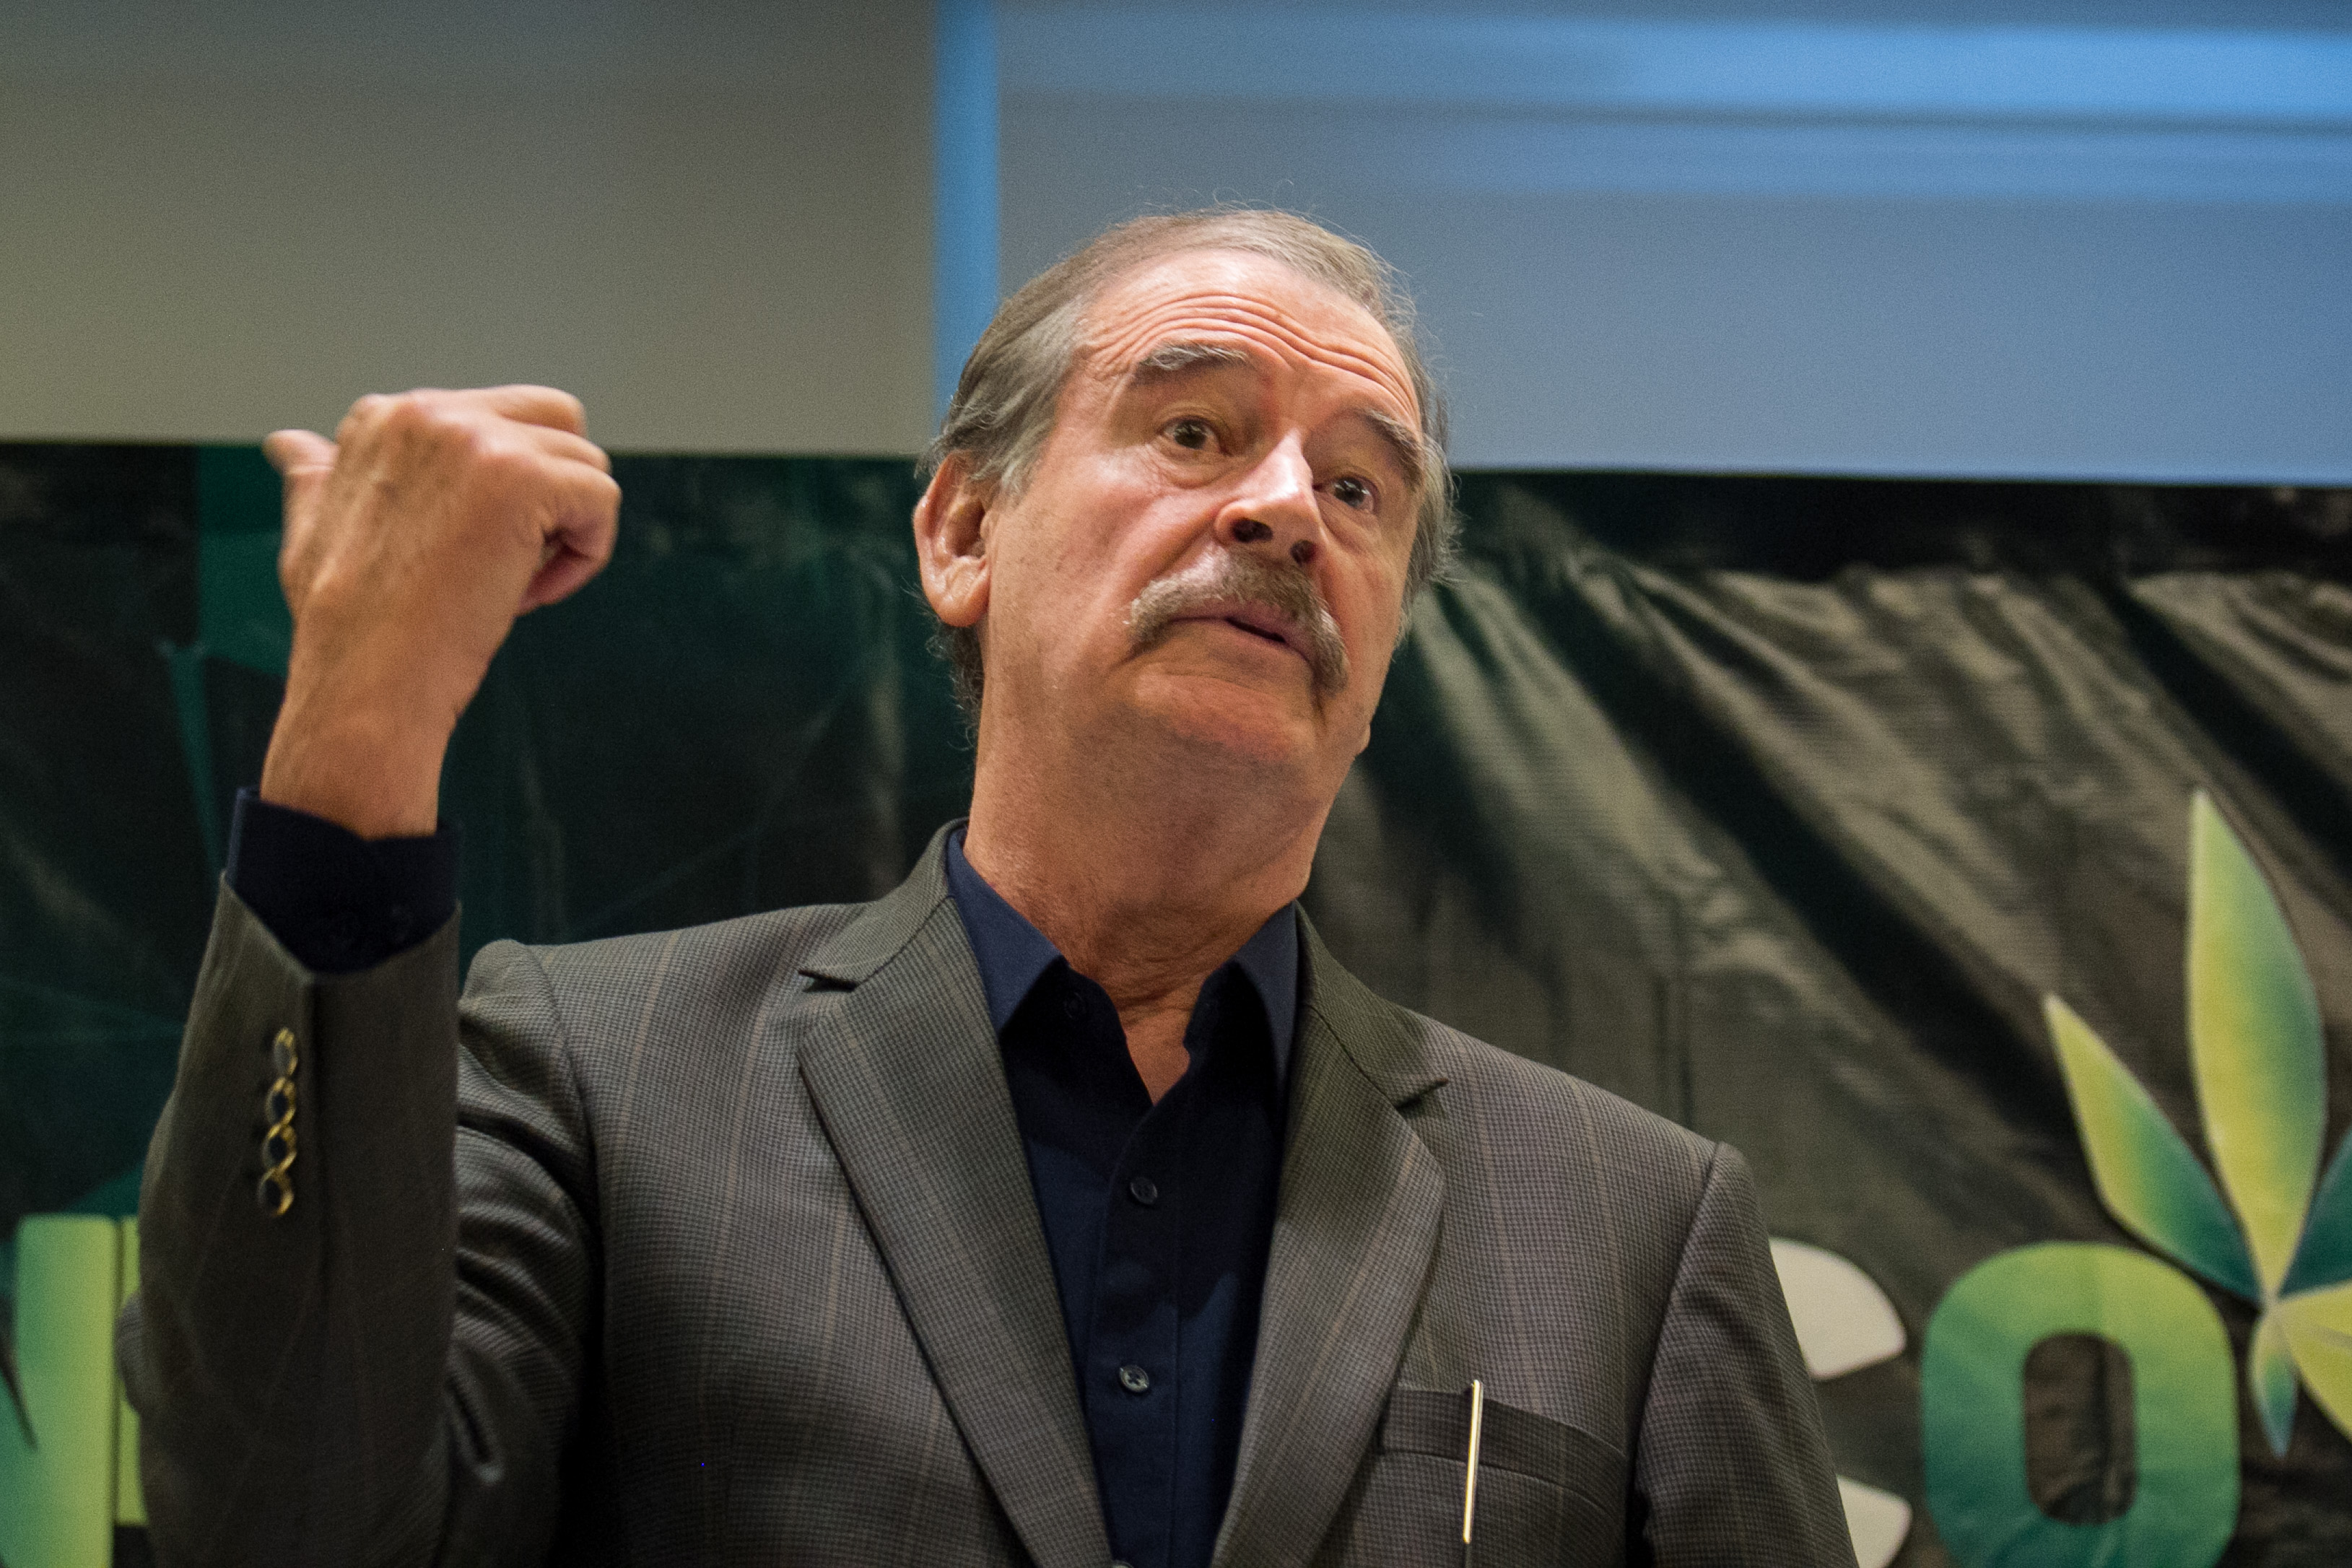 “Crucifícalo”: Vicente Fox apoyó juicio político contra AMLO promovido por Lilly Téllez